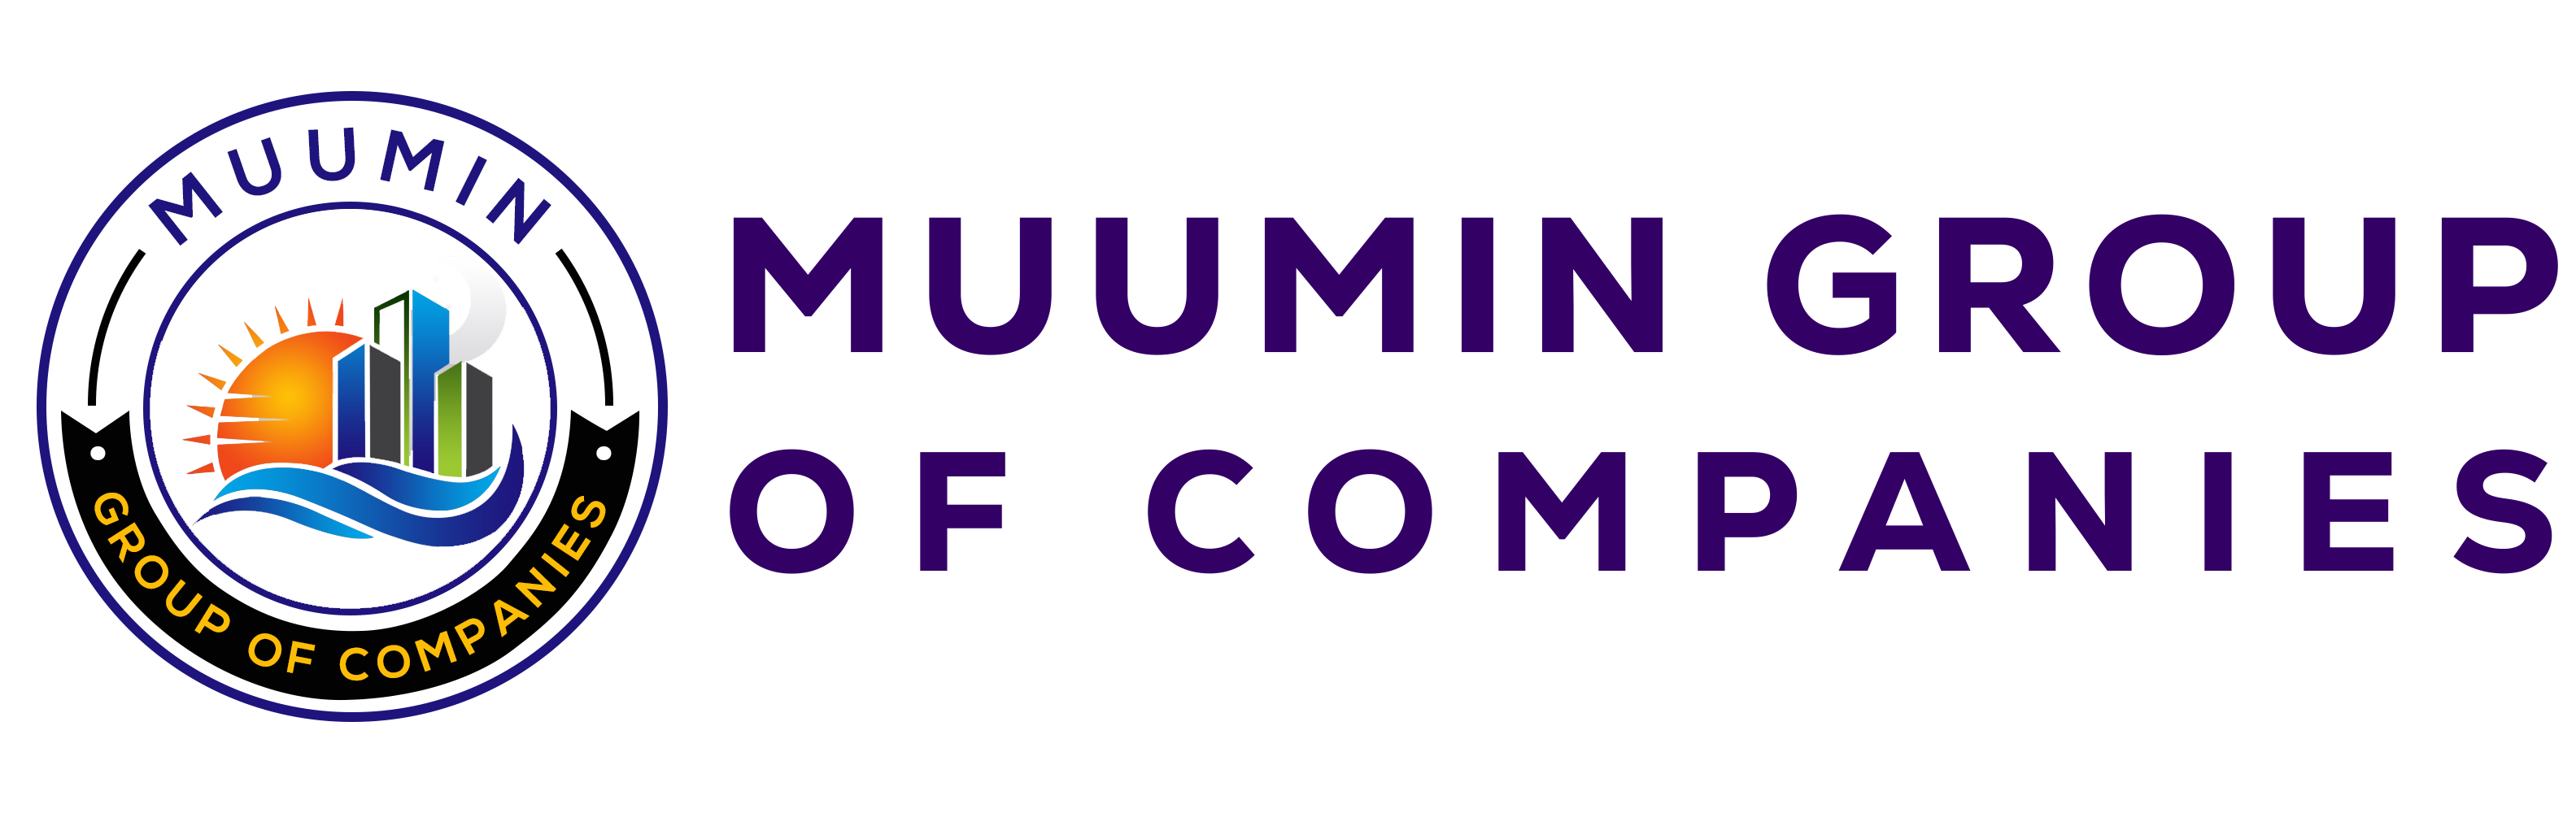 Muumin Group